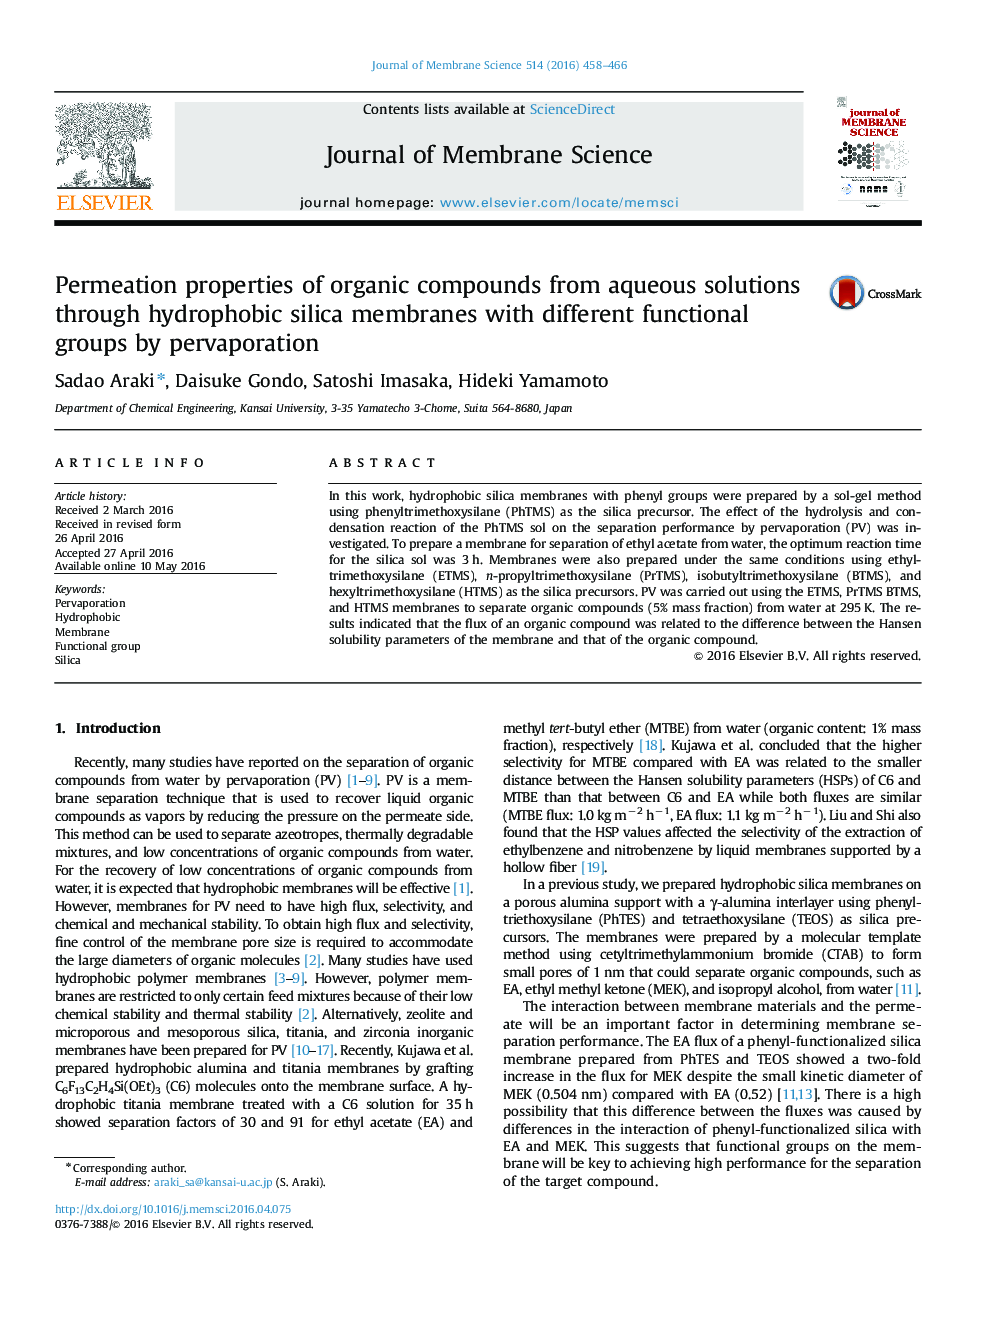 خصوصیات نفوذ ترکیبات آلی از محلول های آبی به وسیله غشاهای سیلیس هیدروفوبی با گروه های عملکردی مختلف توسط پراپرتراسیون 